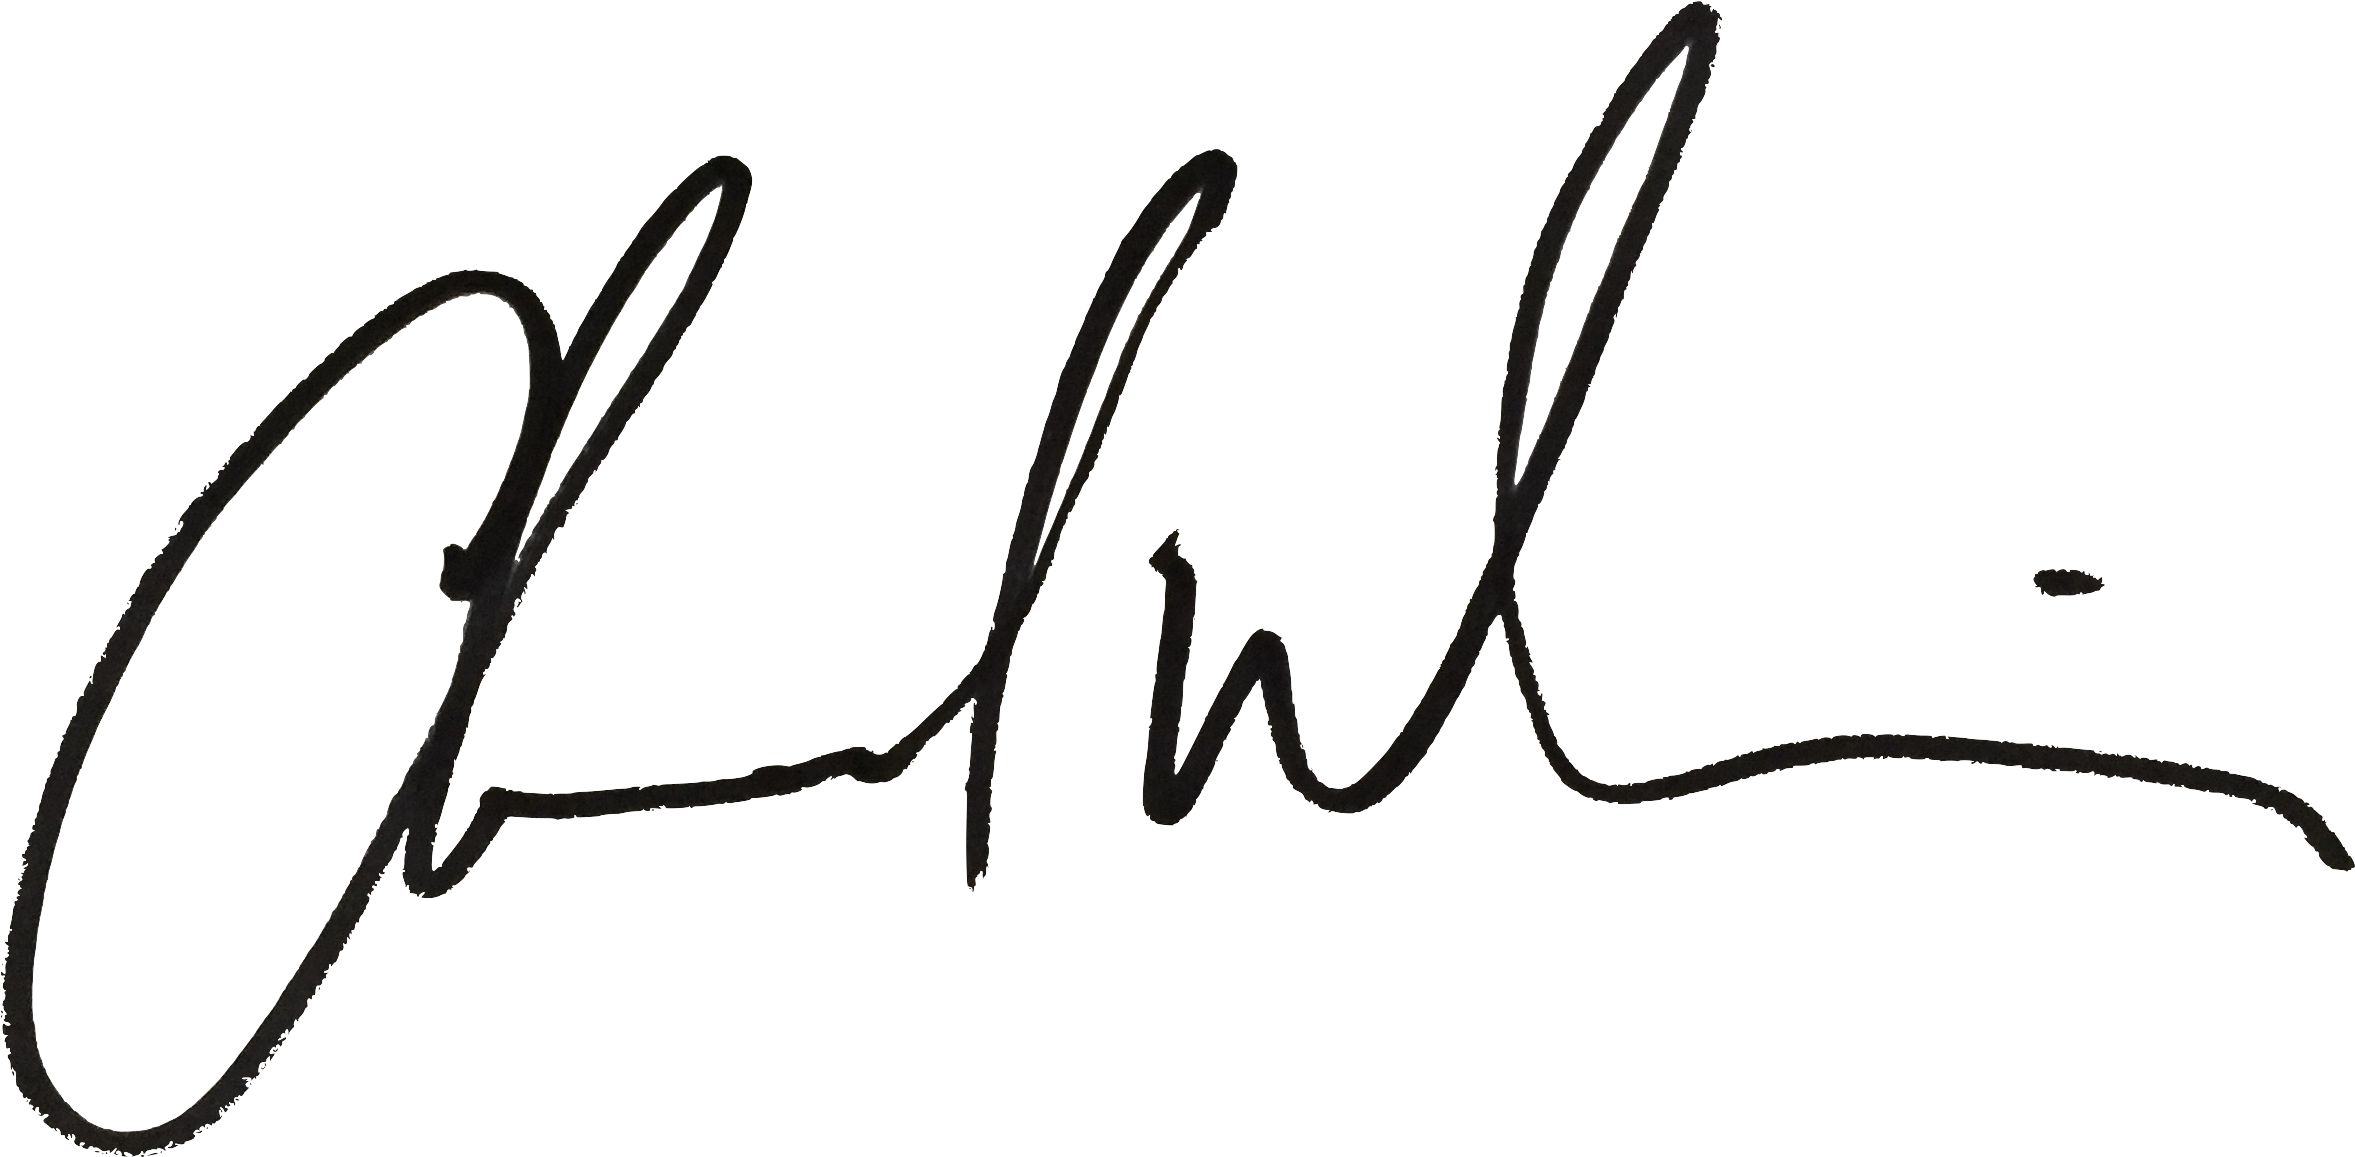 Elegant Handwritten Signature